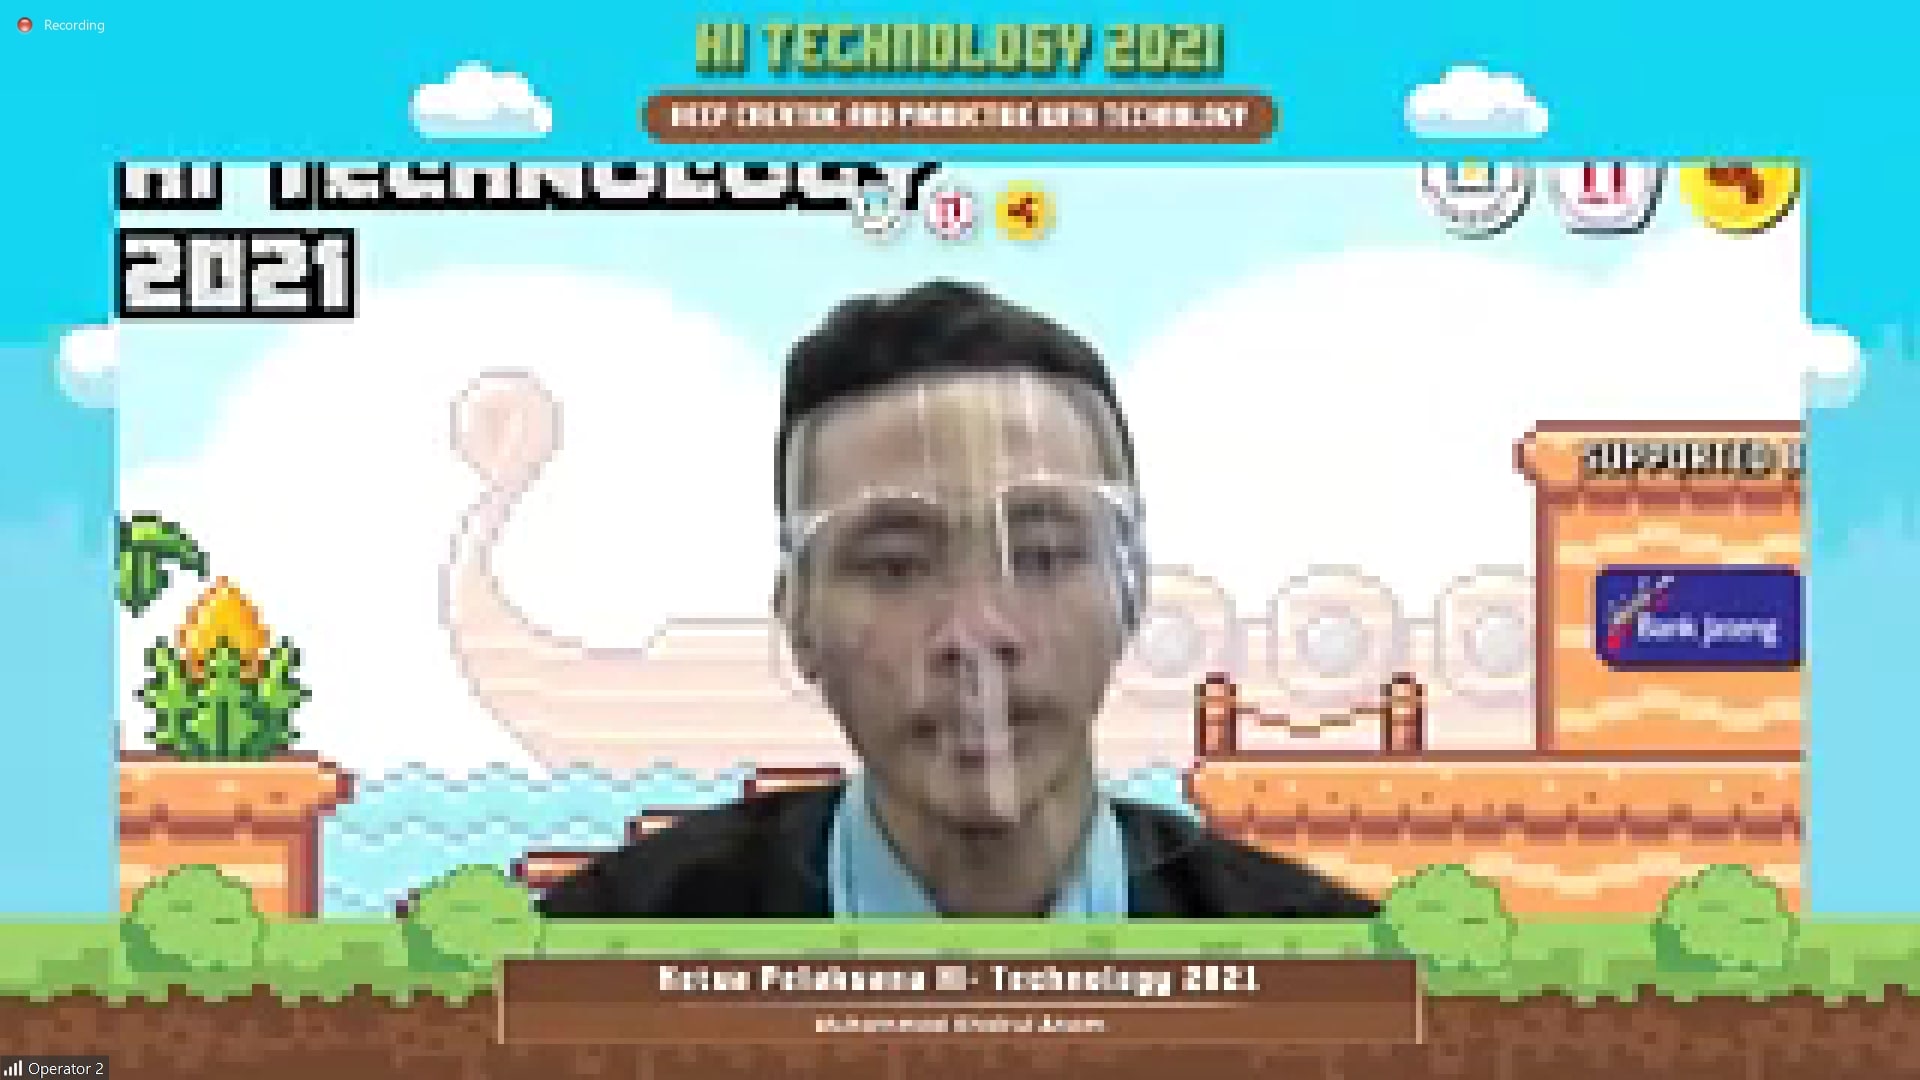 Sambutan dari Ketua Pelaksana acara Hi Technology 2021